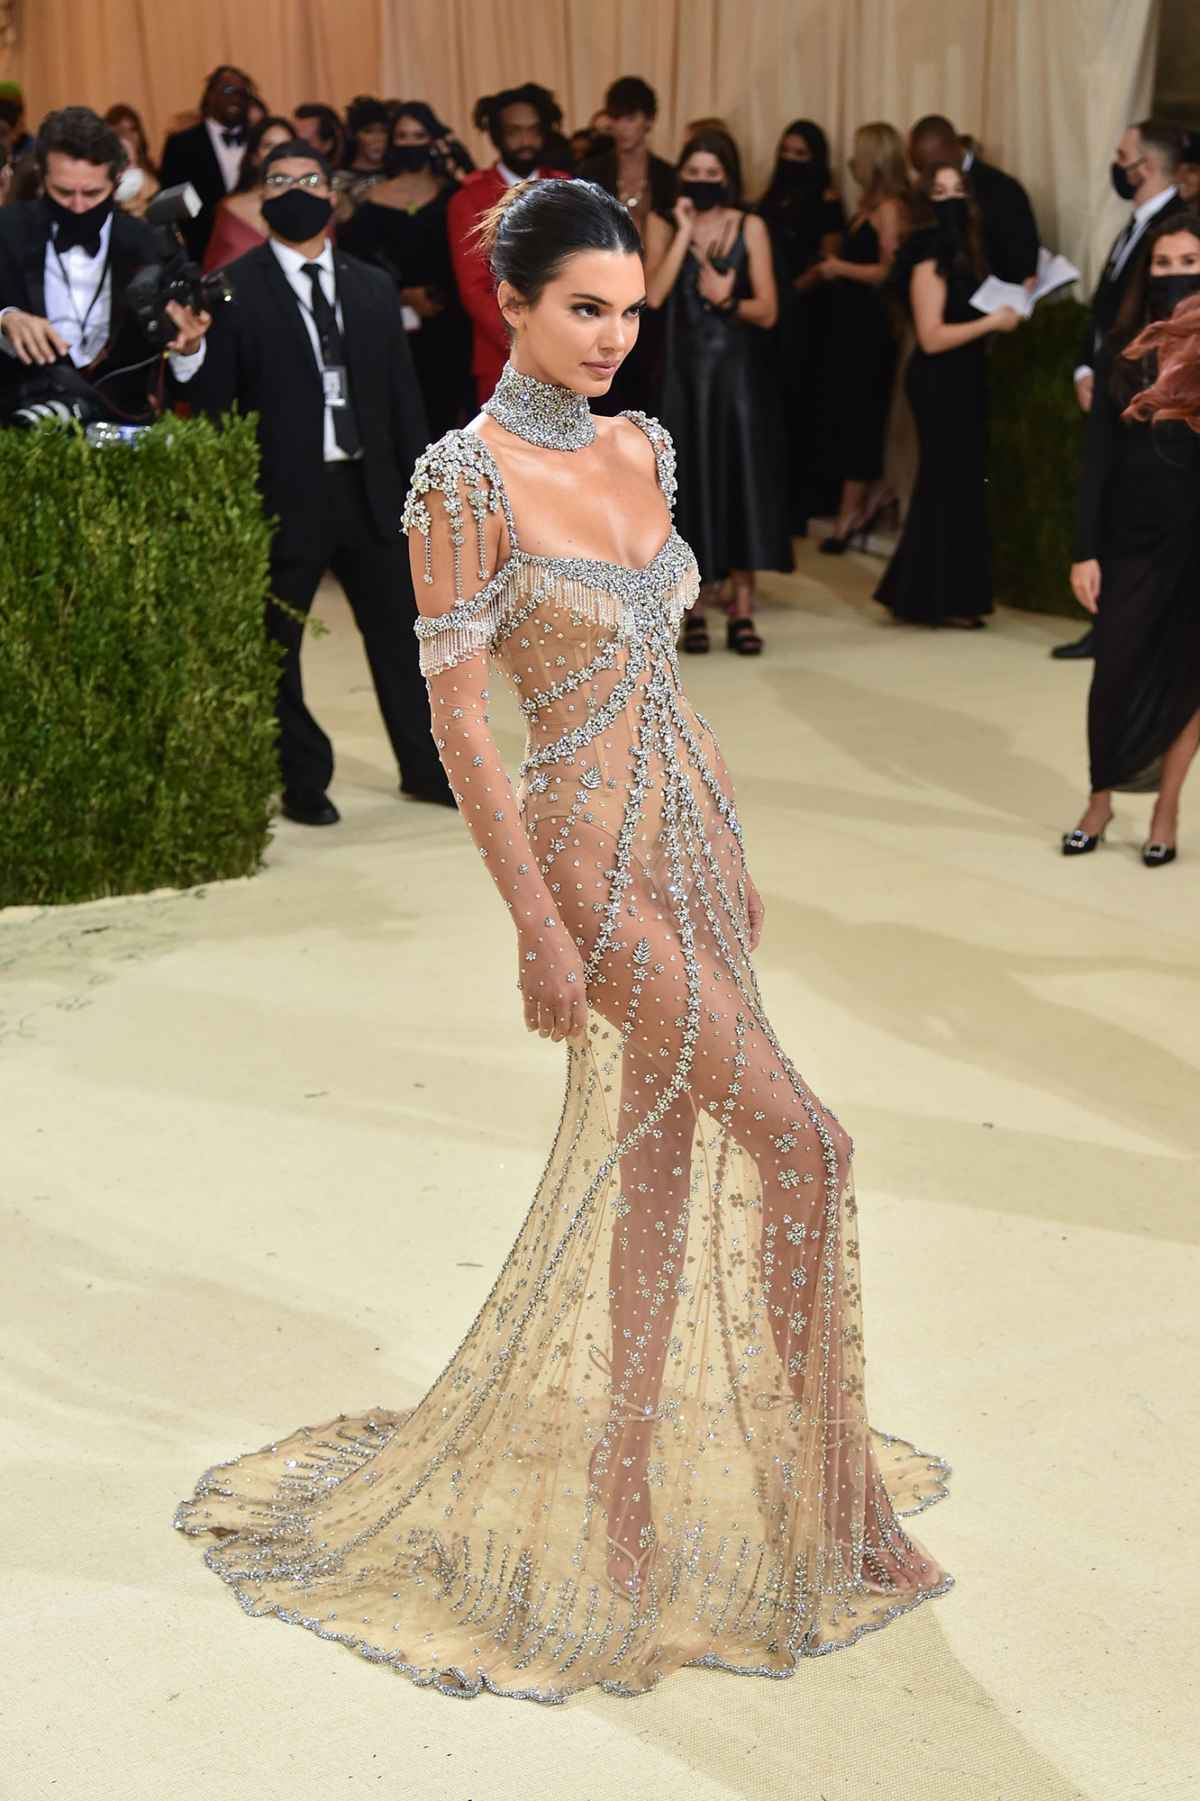 Met Gala 2021: Kendall Jenner Red Carpet Fashion, Dress